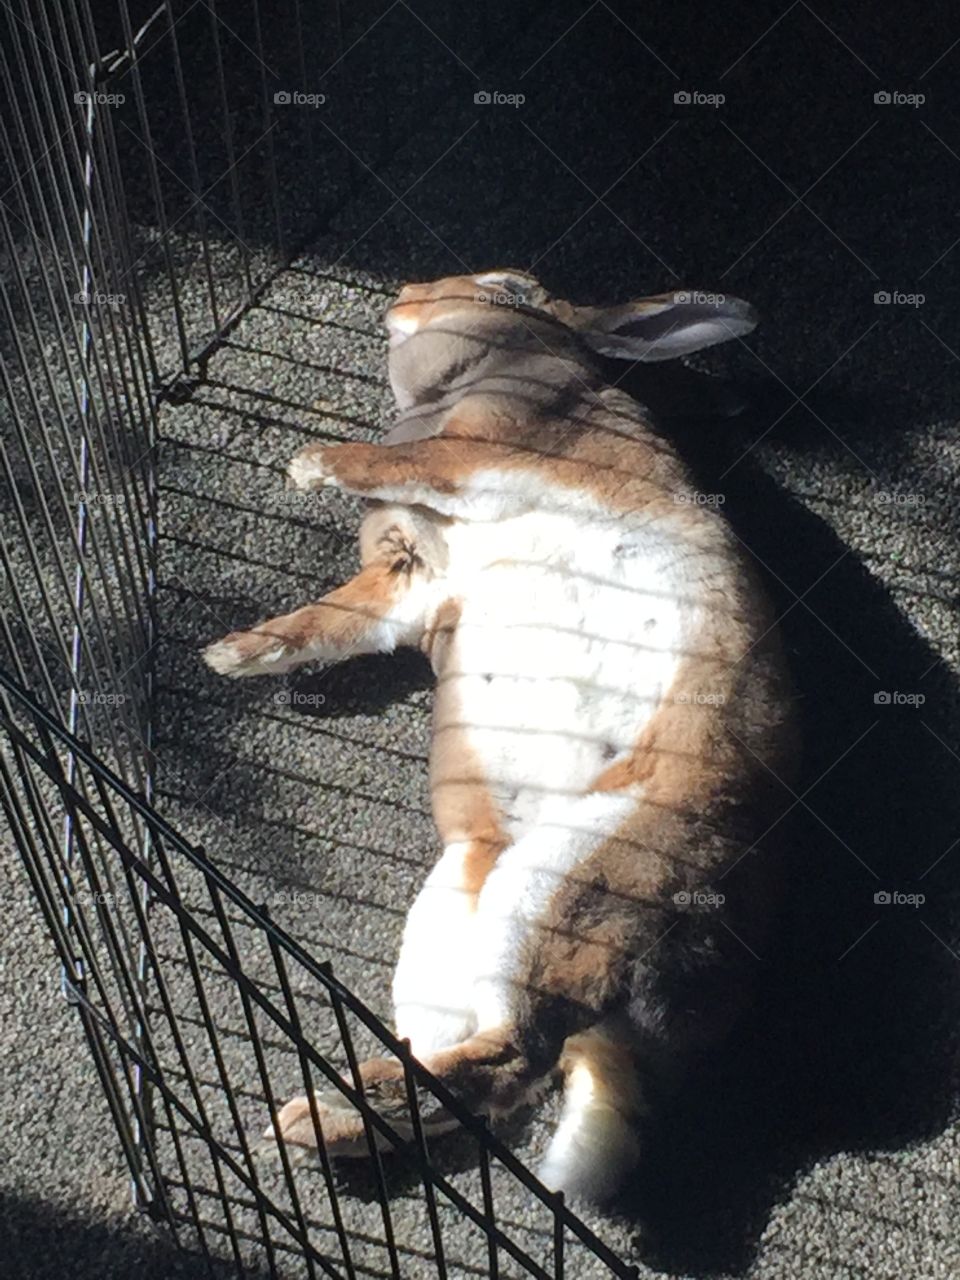 Rabbit sunning itself